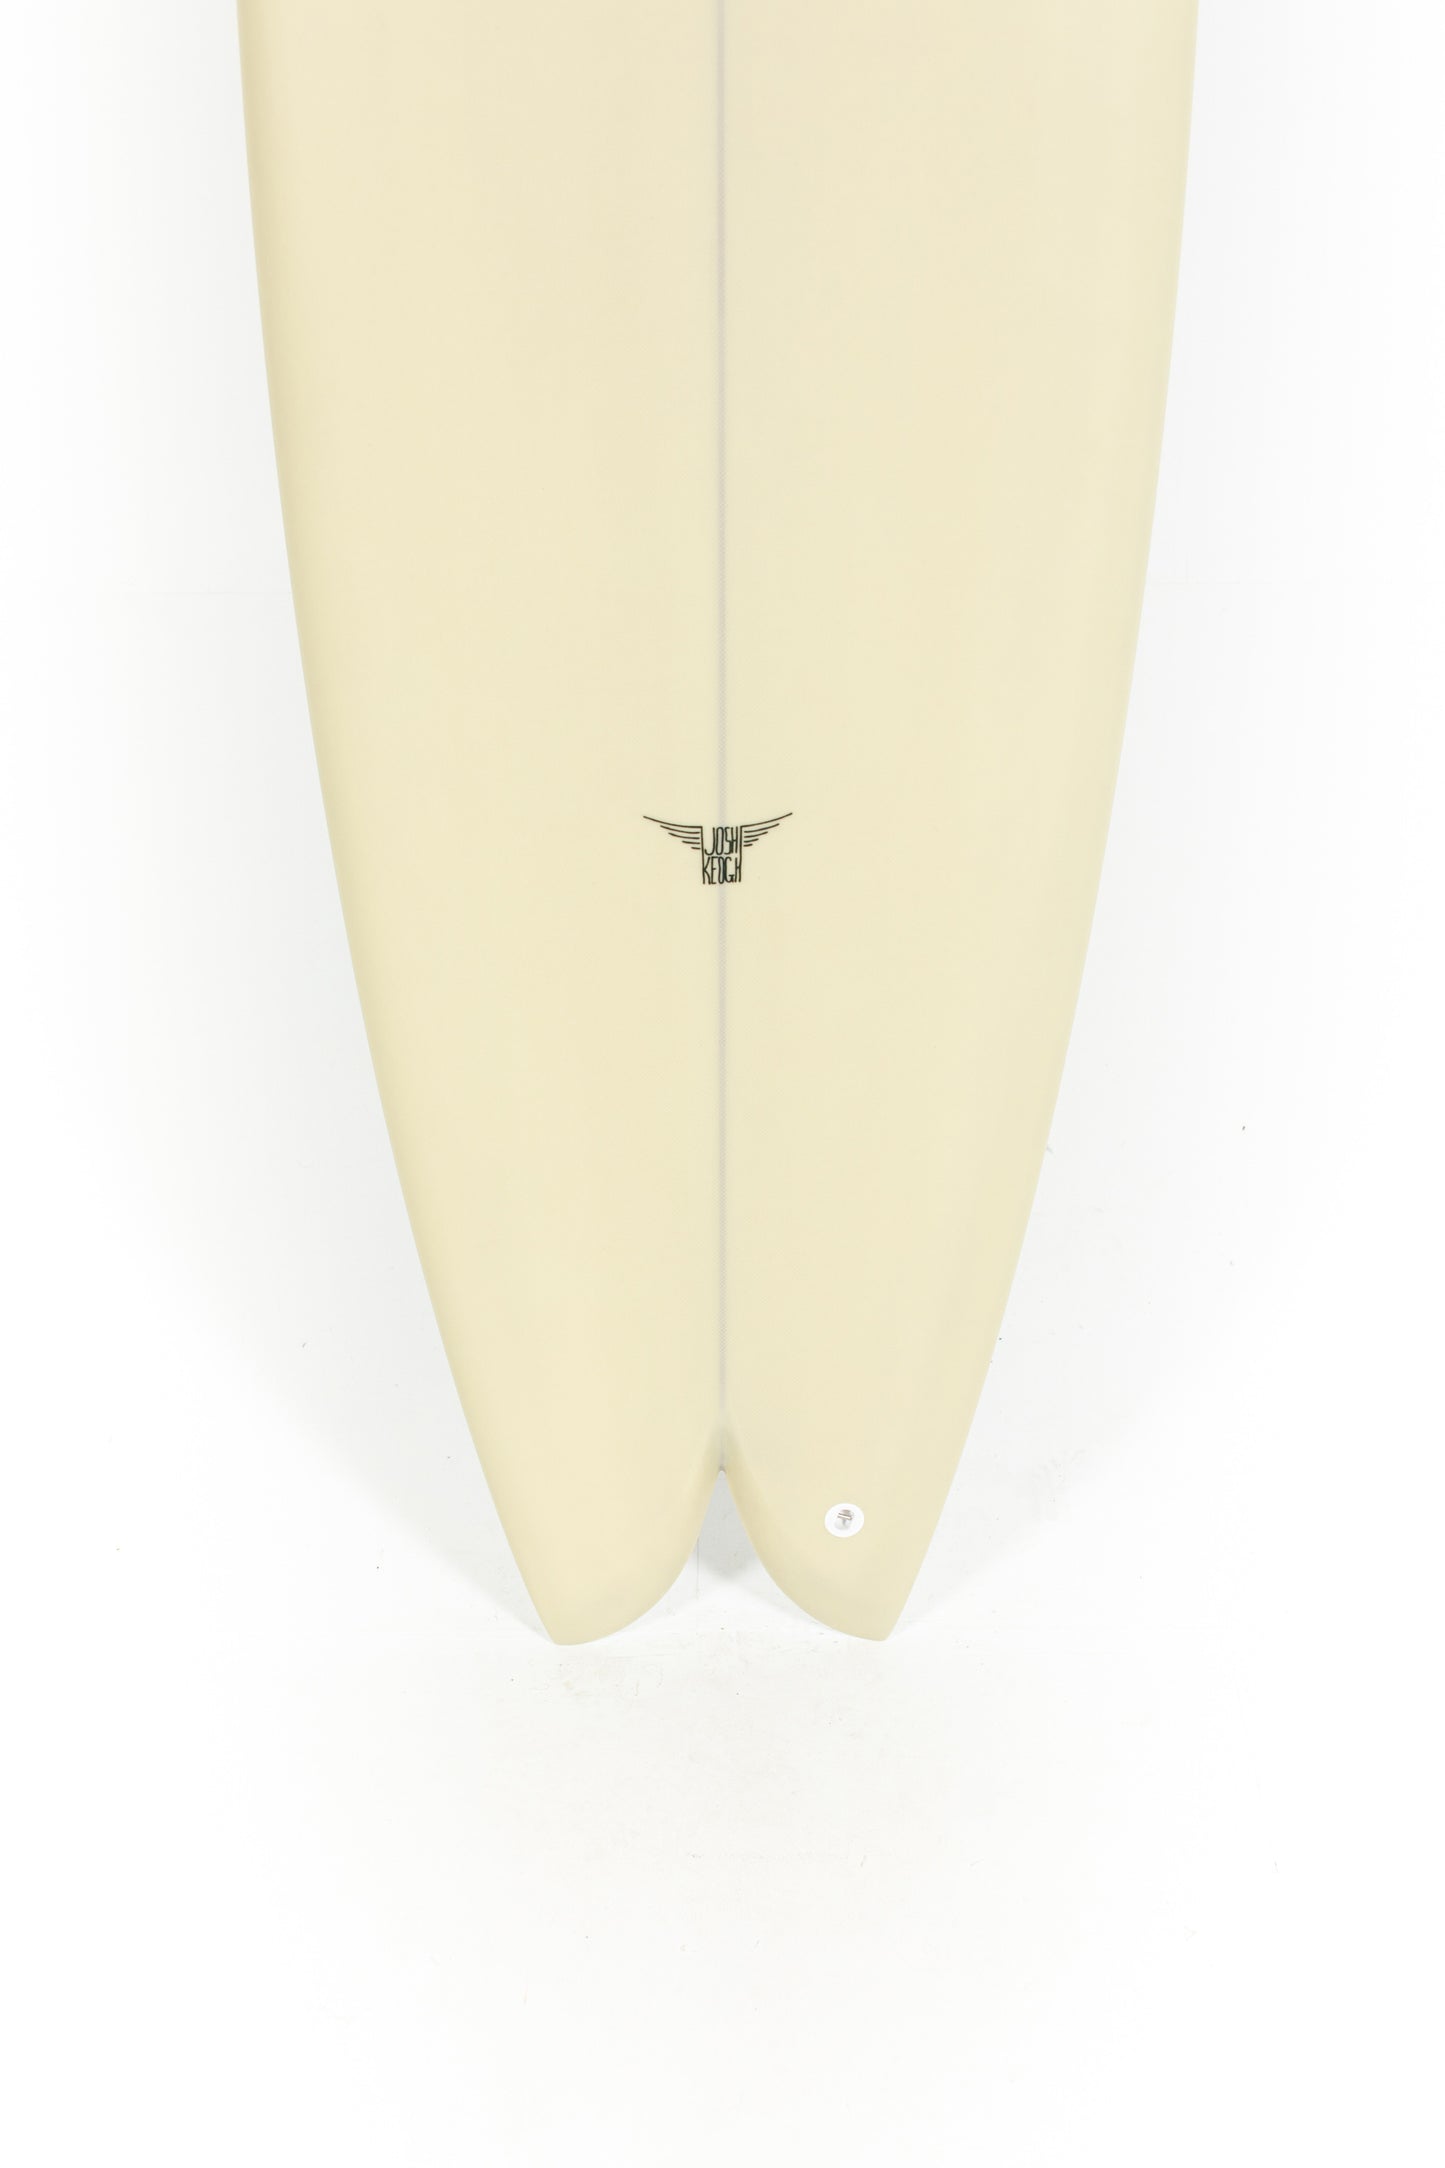 
                  
                    Pukas Surf Shop_Joshua Keogh Surfboard - M2 by Joshua Keogh - 6'8" x 21 1/4 x 2 11/16 - M268
                  
                